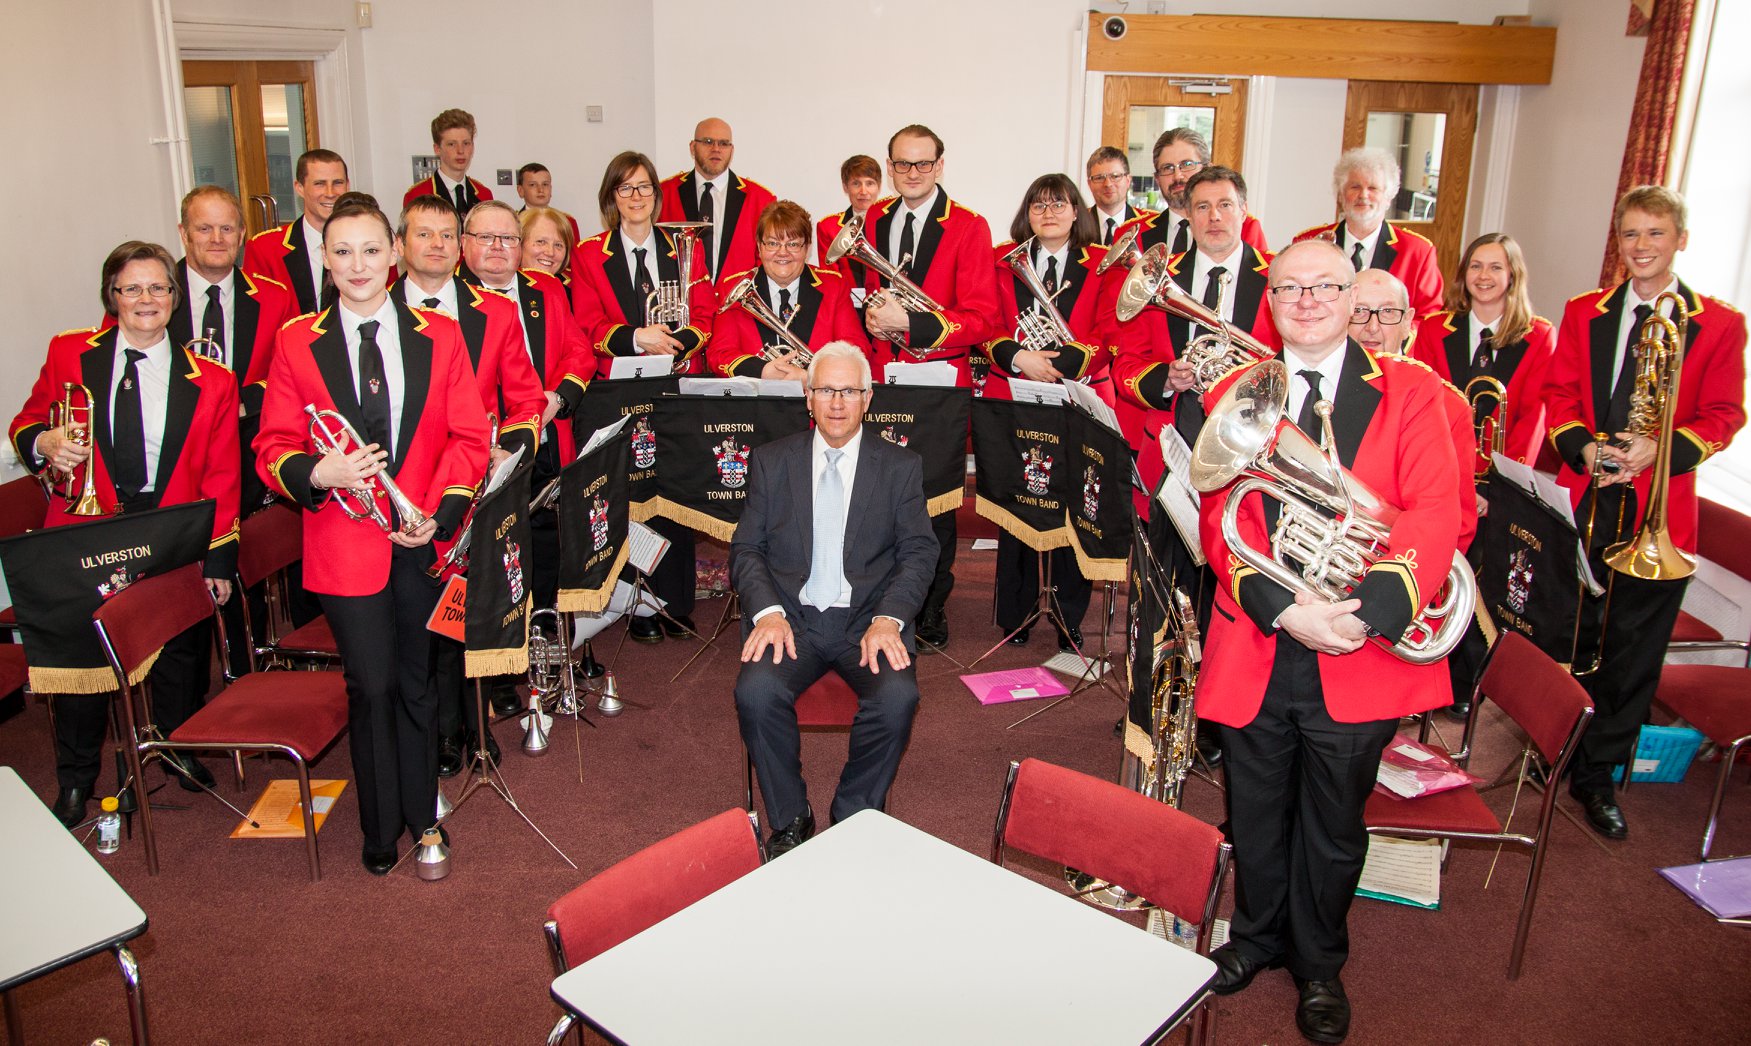 Ulverston Town Band